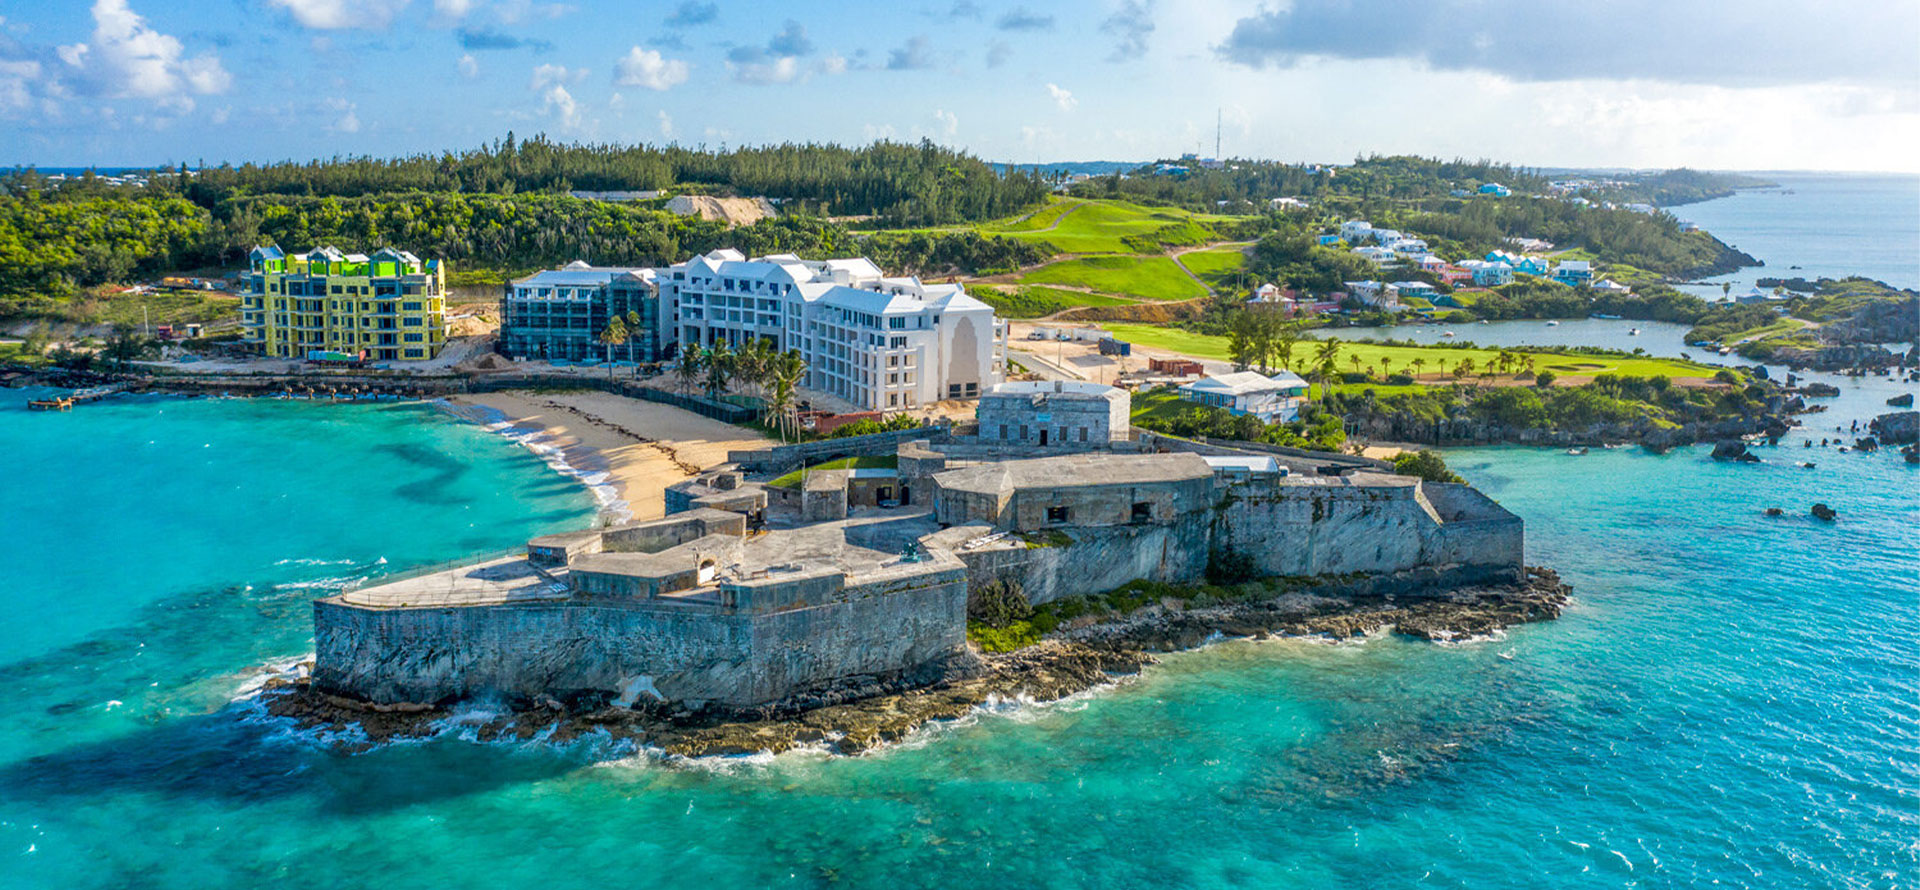 Bermuda all inclusive resorts landscape.